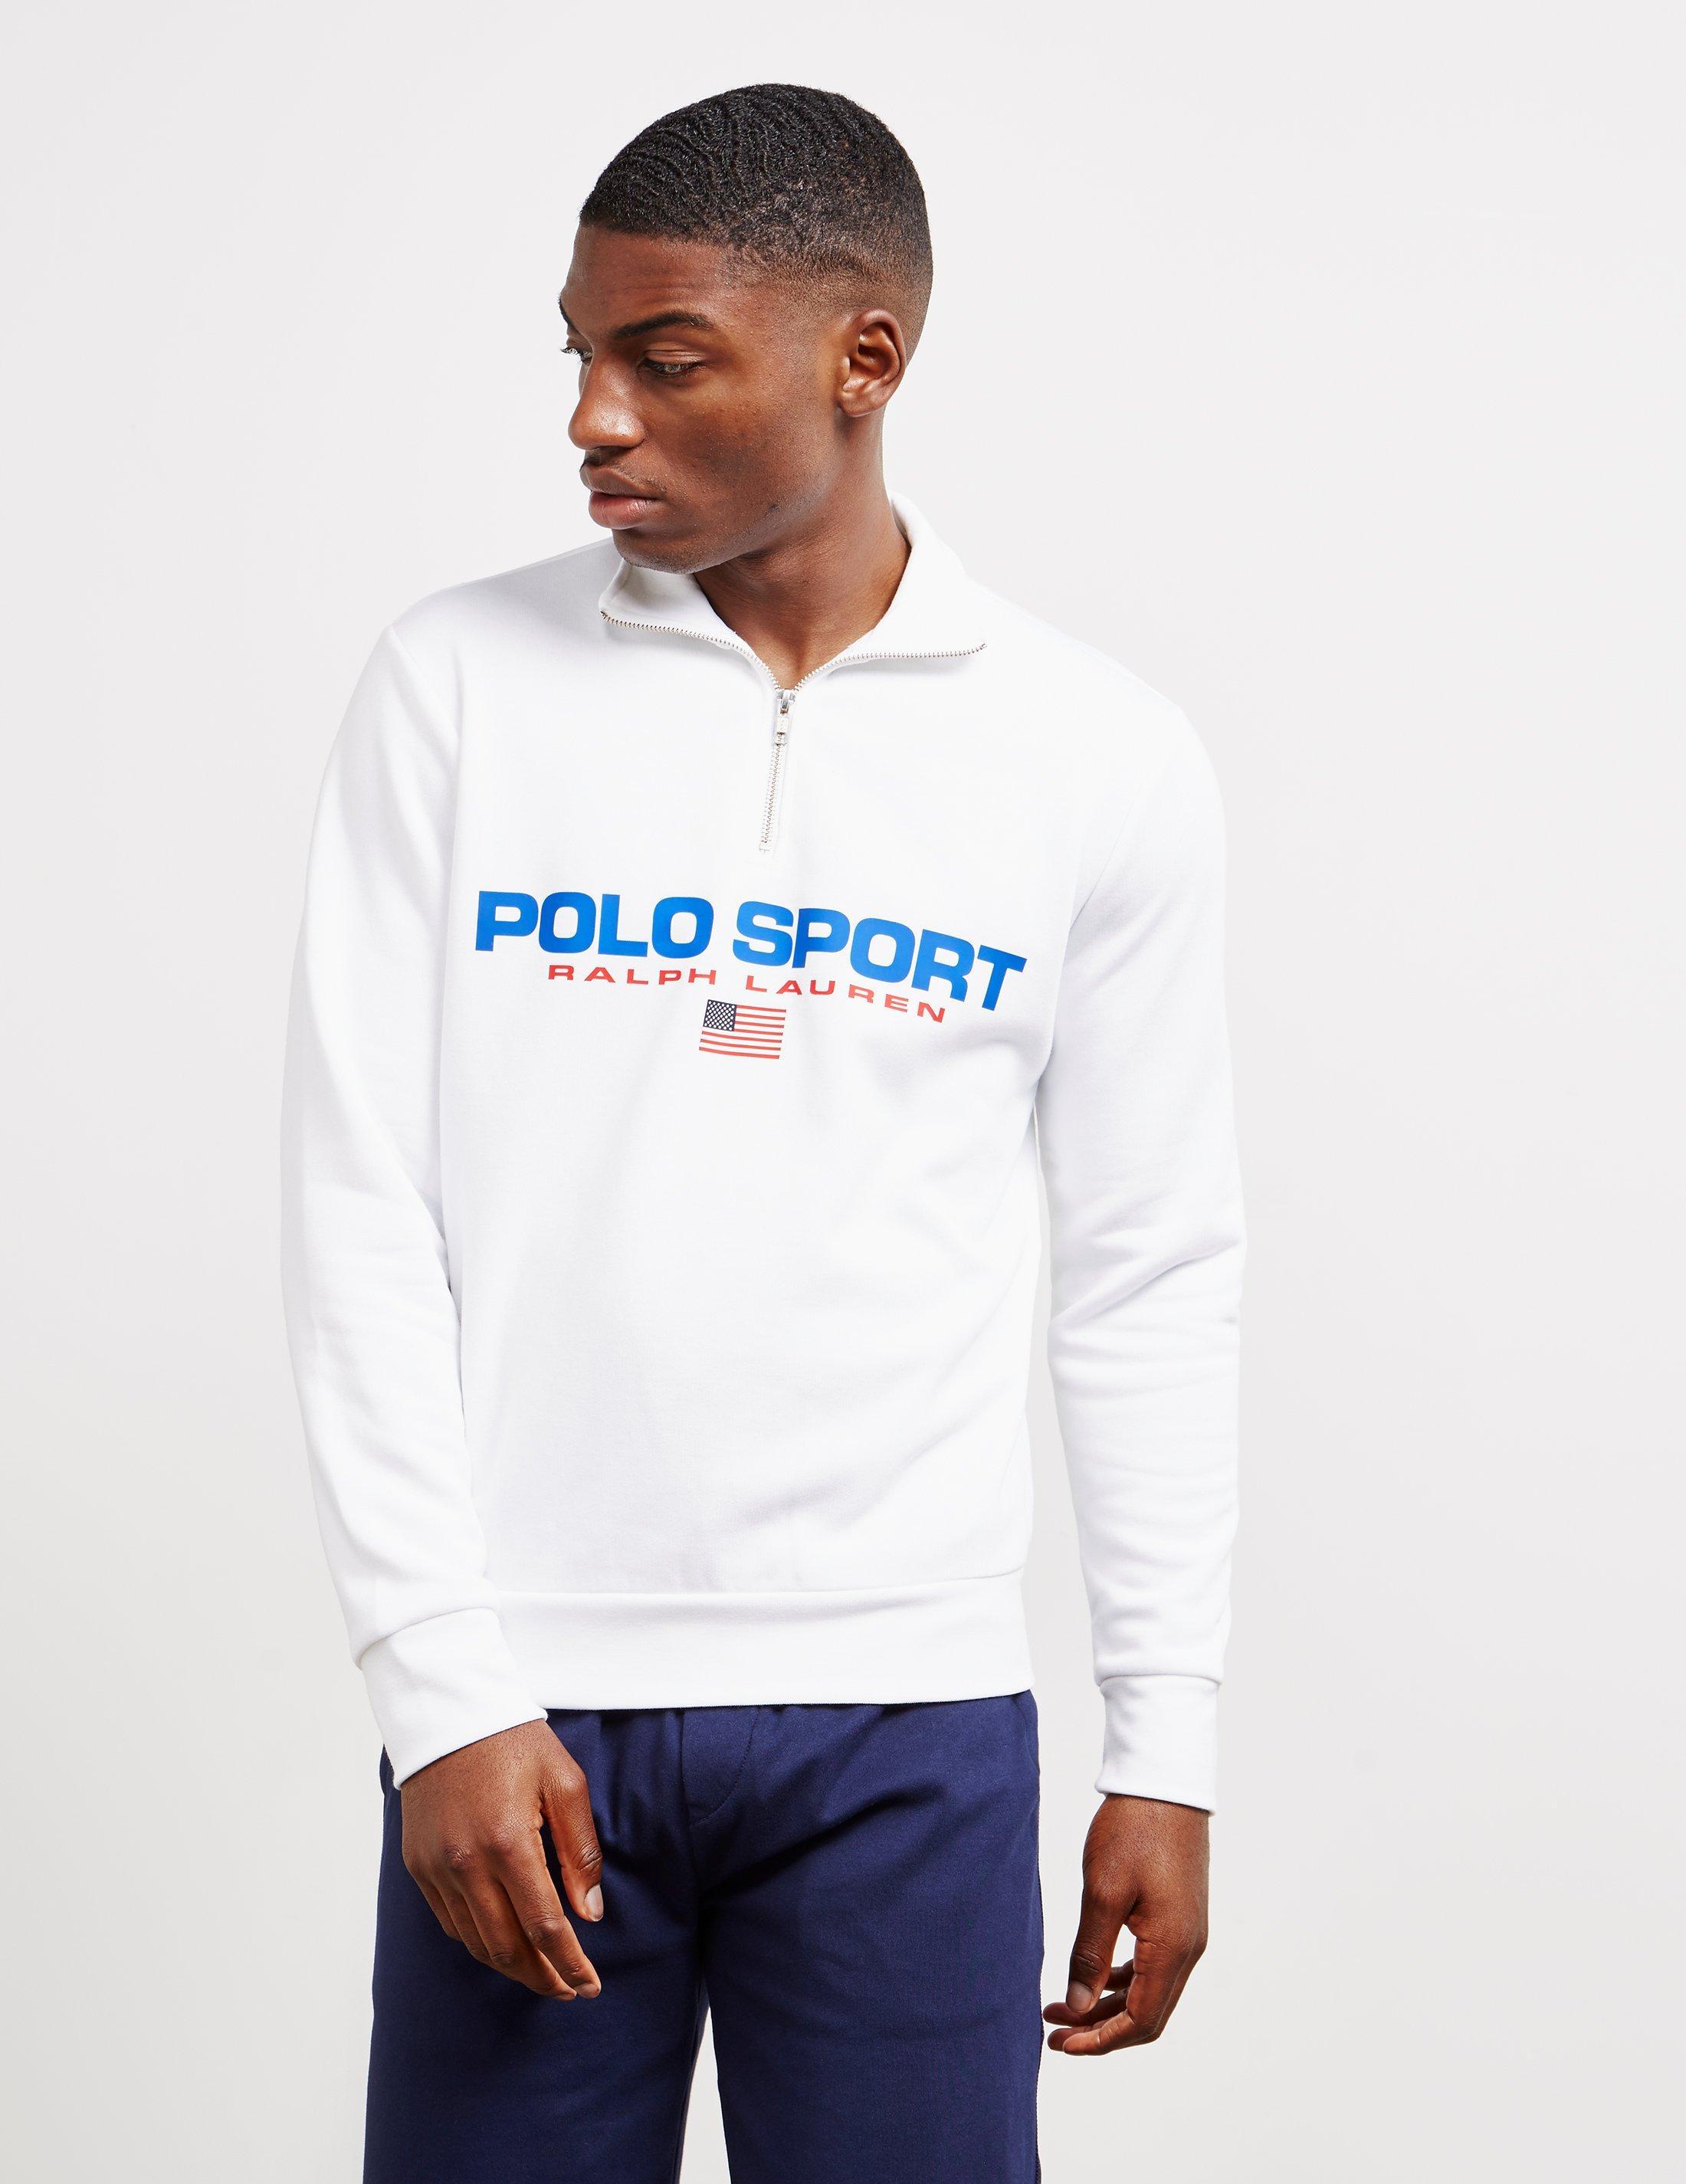 polo sport half zip sweatshirt